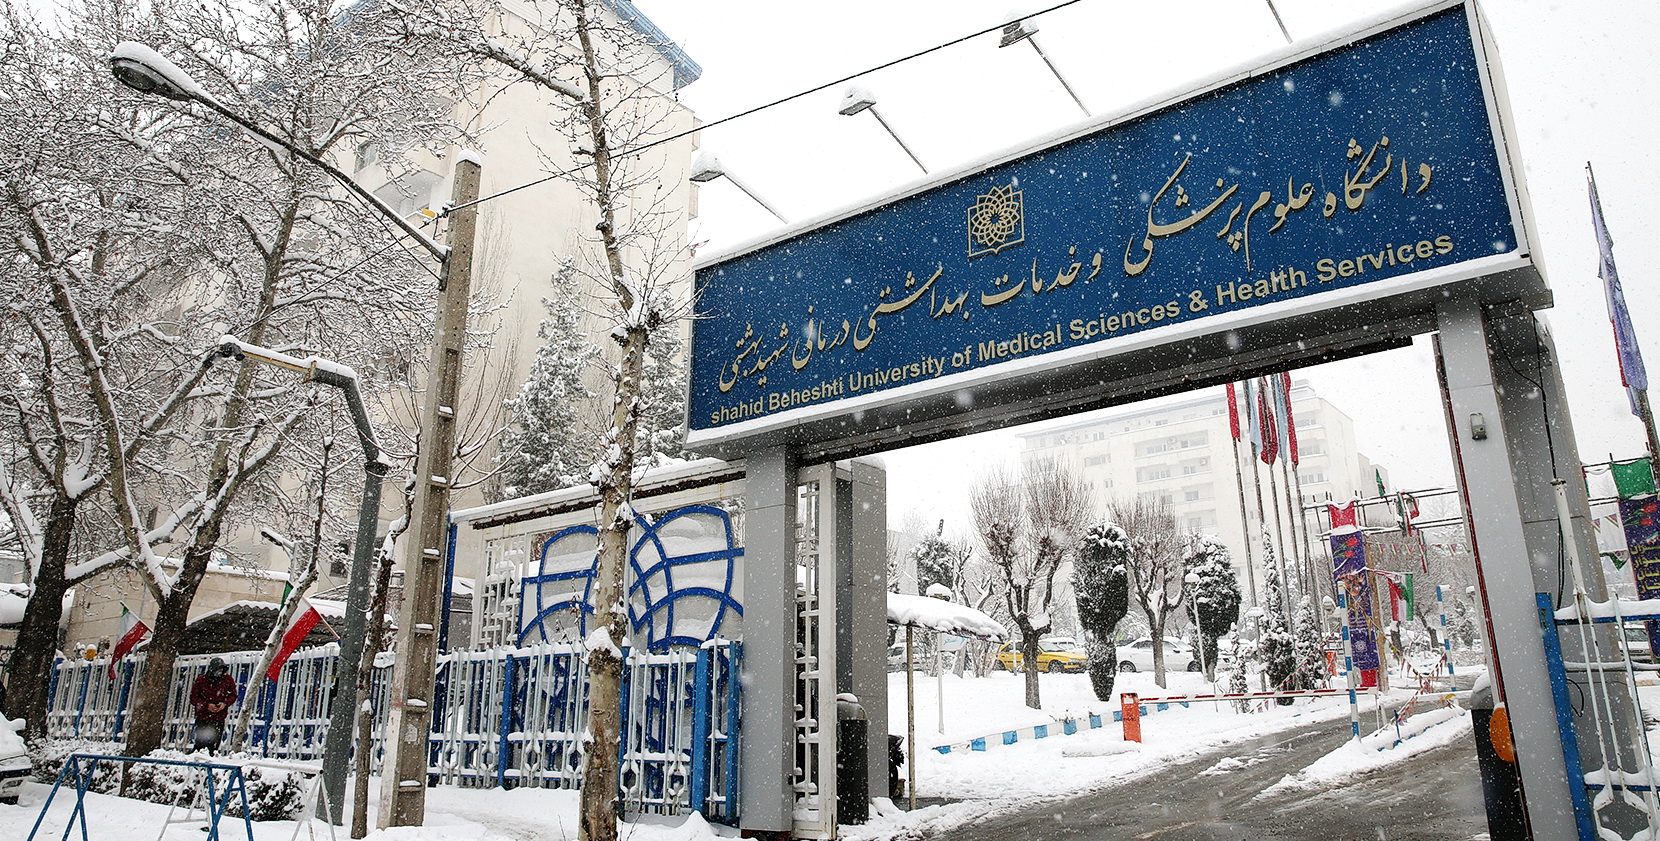 حال و هوای روز برفی در دانشگاه علوم پزشکی شهید بهشتی